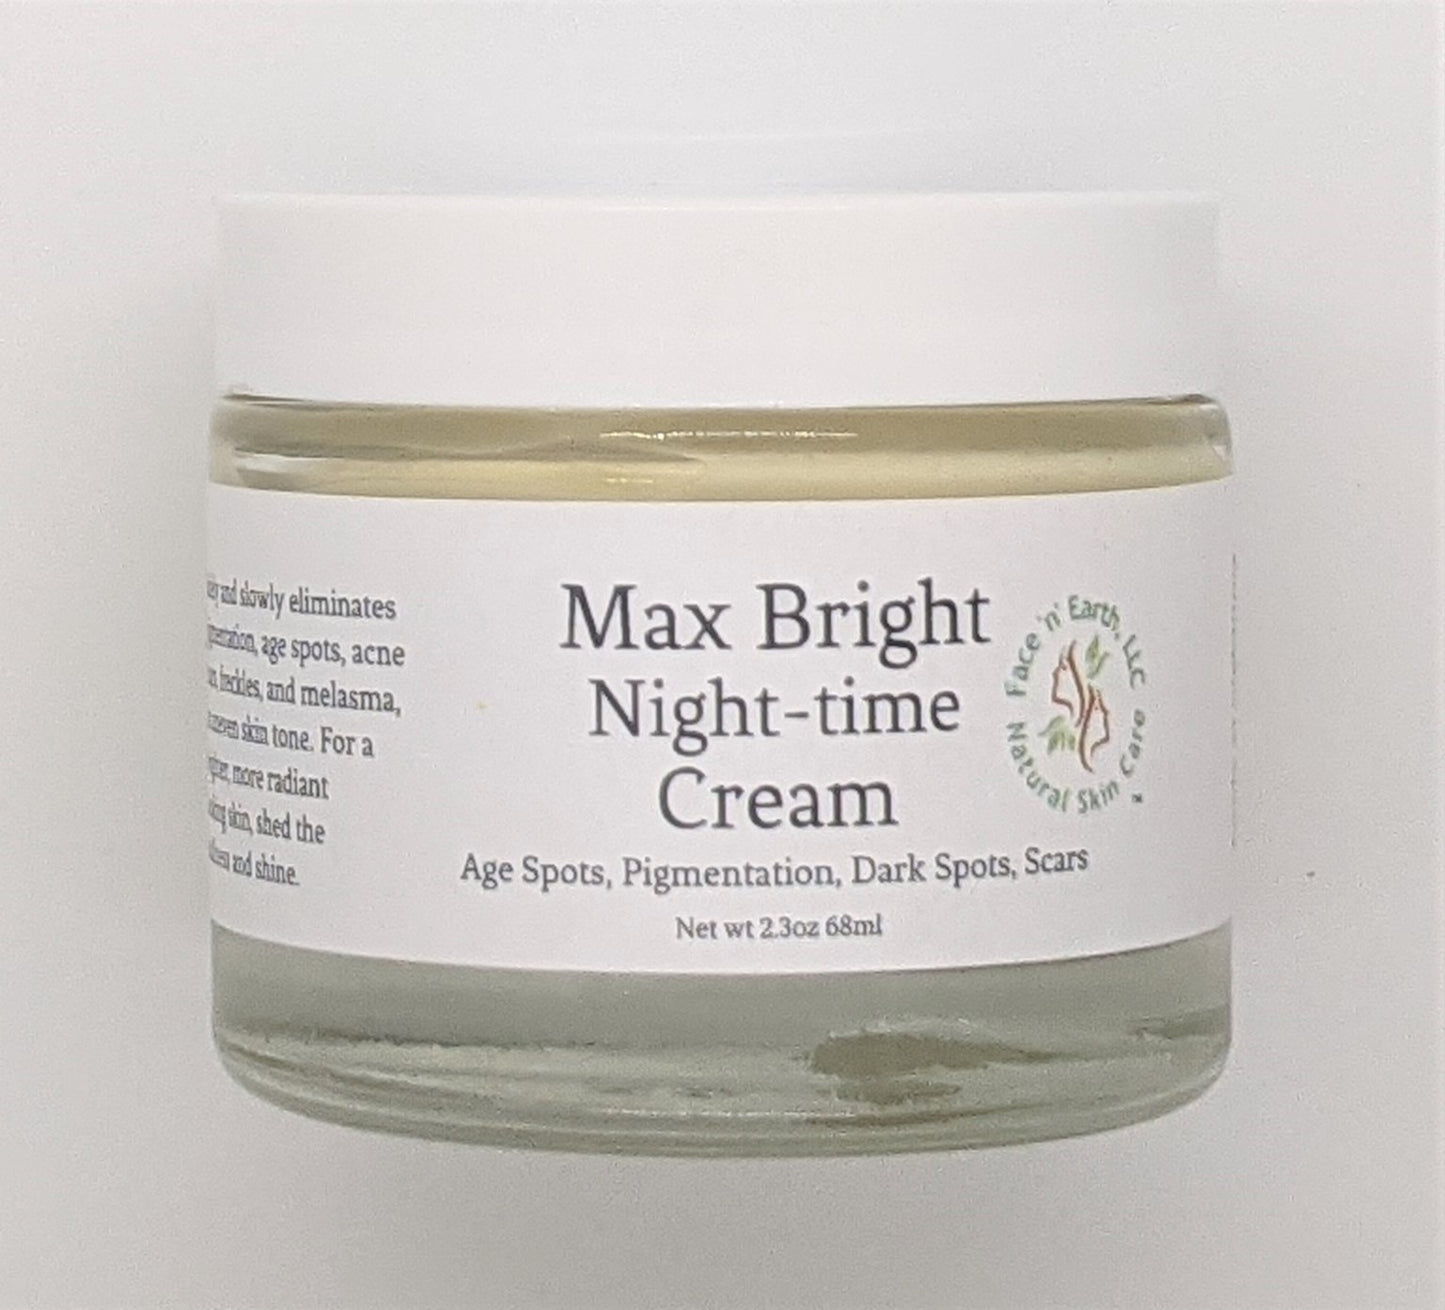 Max Bright Night-time Cream MSM, Vit C, Licorice - Facenearth